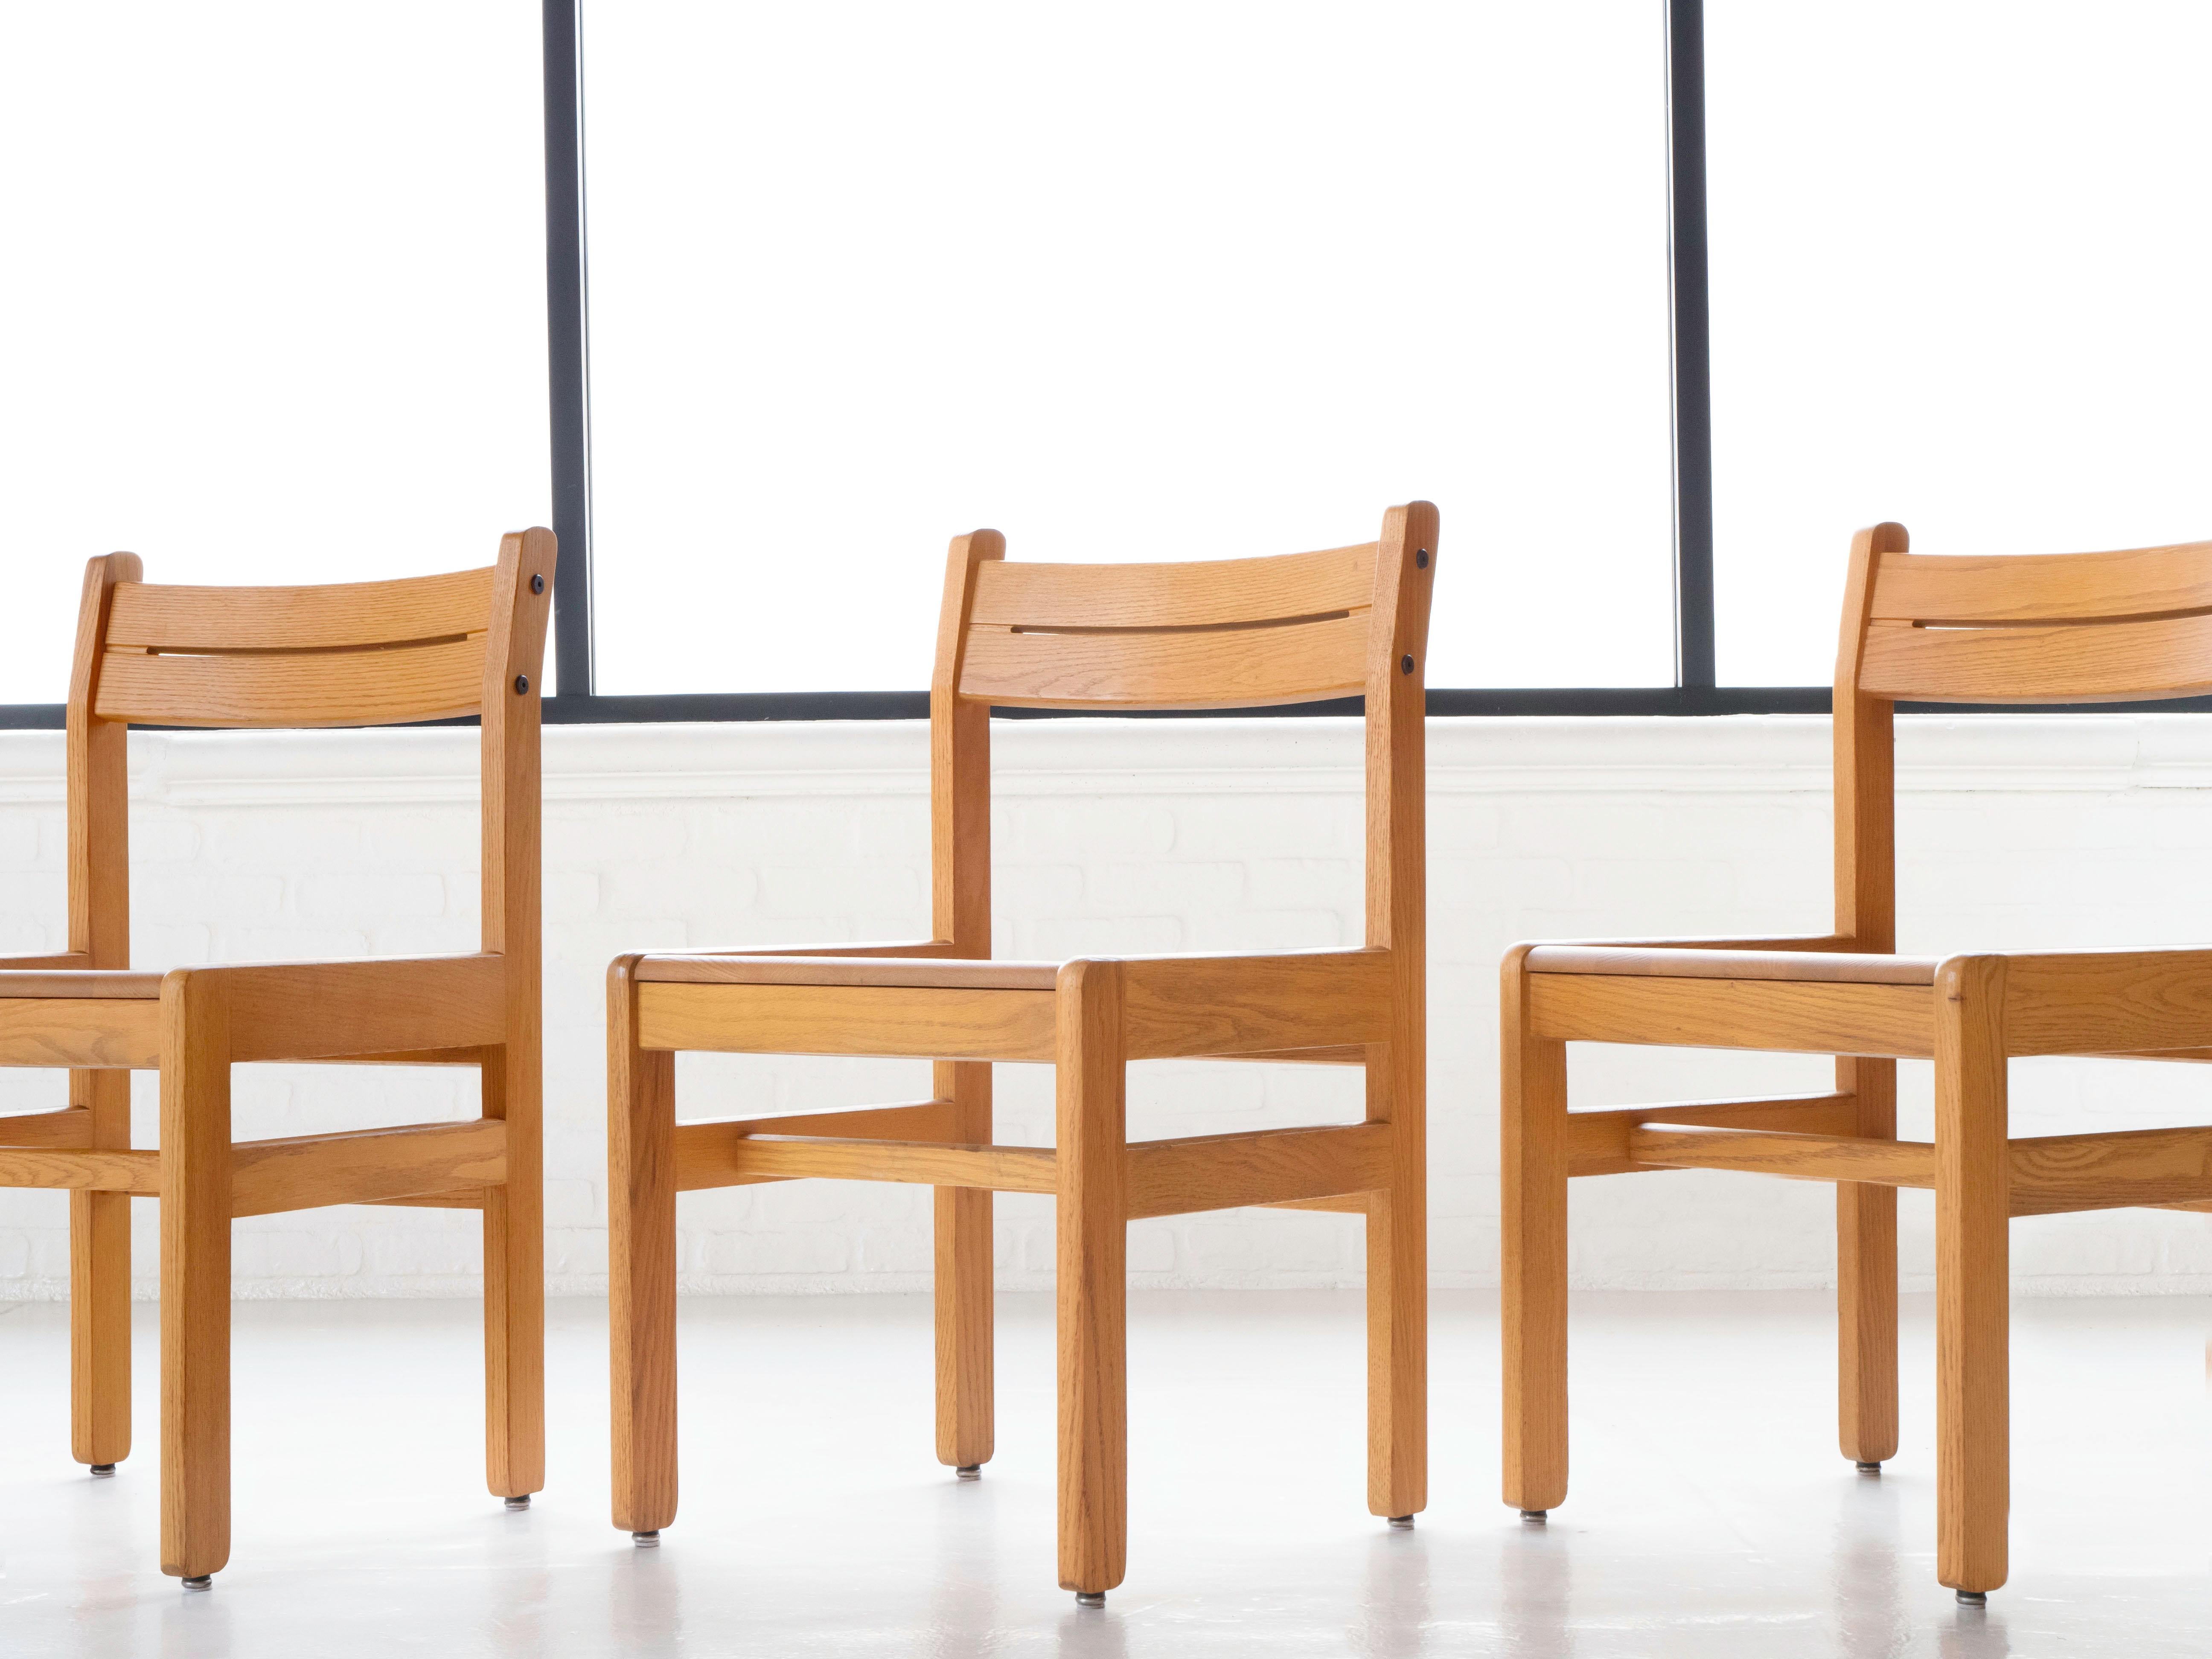 Ensemble de neuf chaises de bibliothèque de style français post-moderne entièrement en chêne massif. Fabriqué vers les années 1990. Chaque chaise a été légèrement nettoyée et se trouve dans son état d'origine, présentant une légère patine. Tous sont